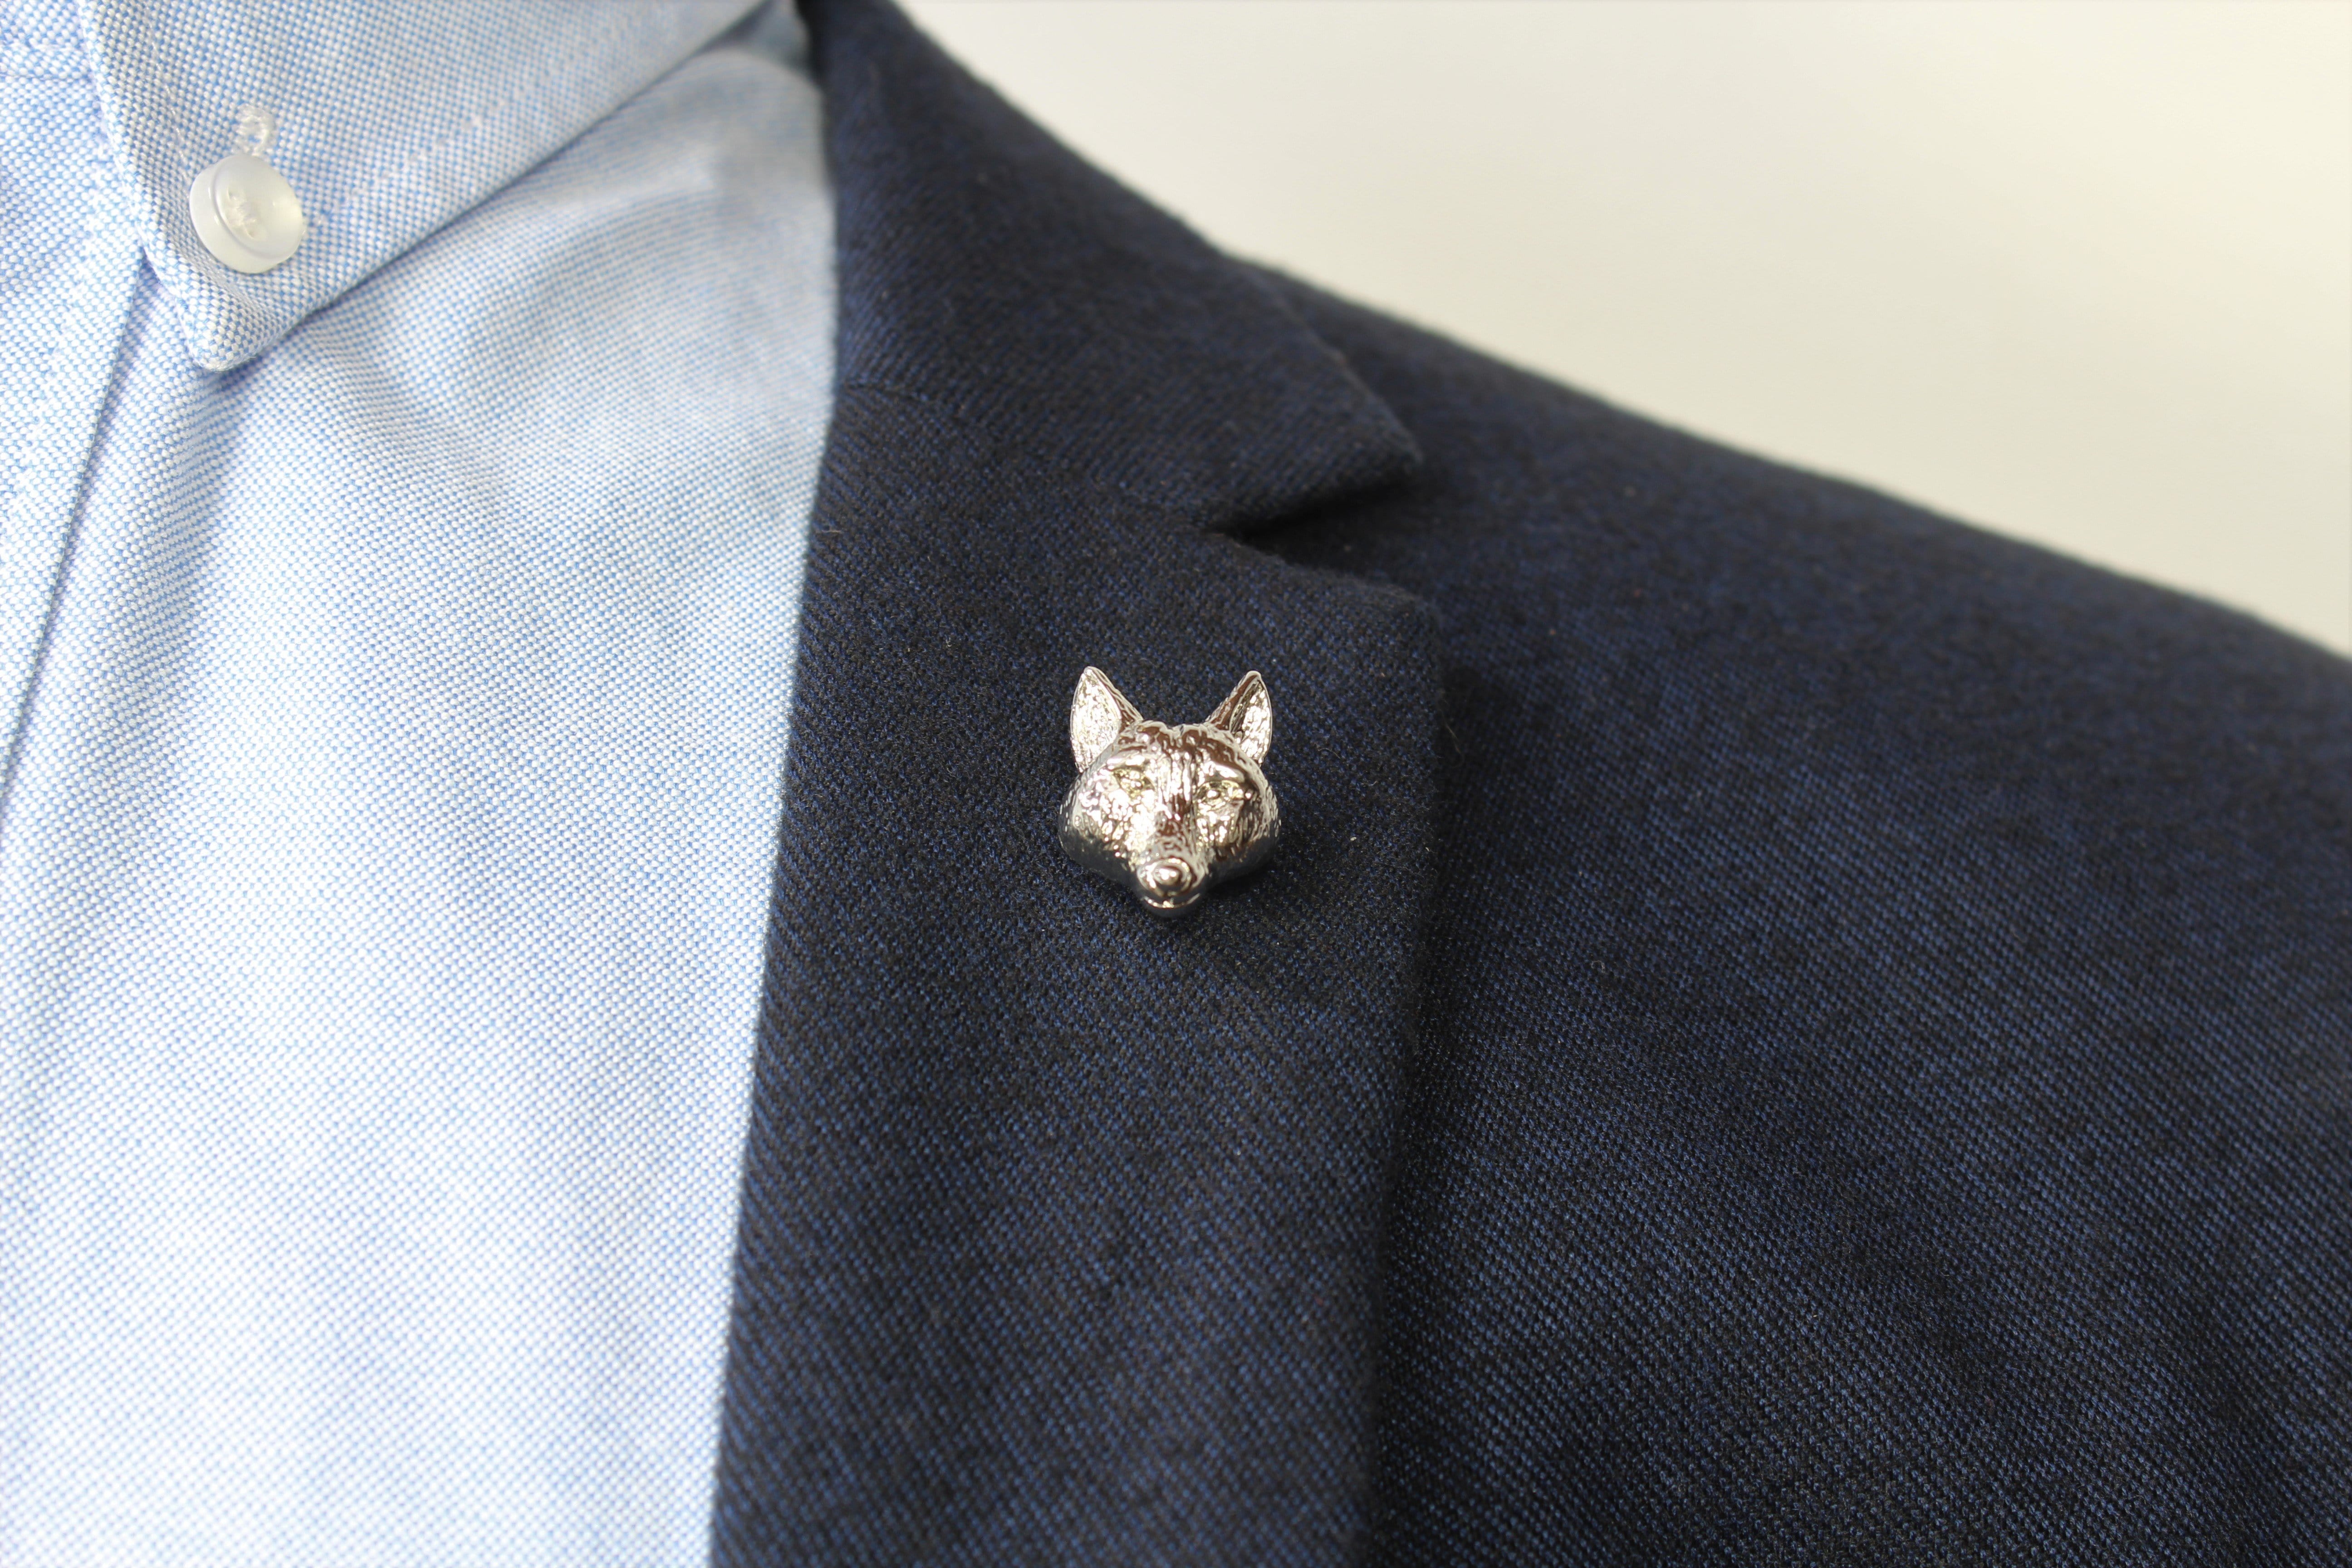 Wolf Head Lapel Pin on blazer - Stolen Riches